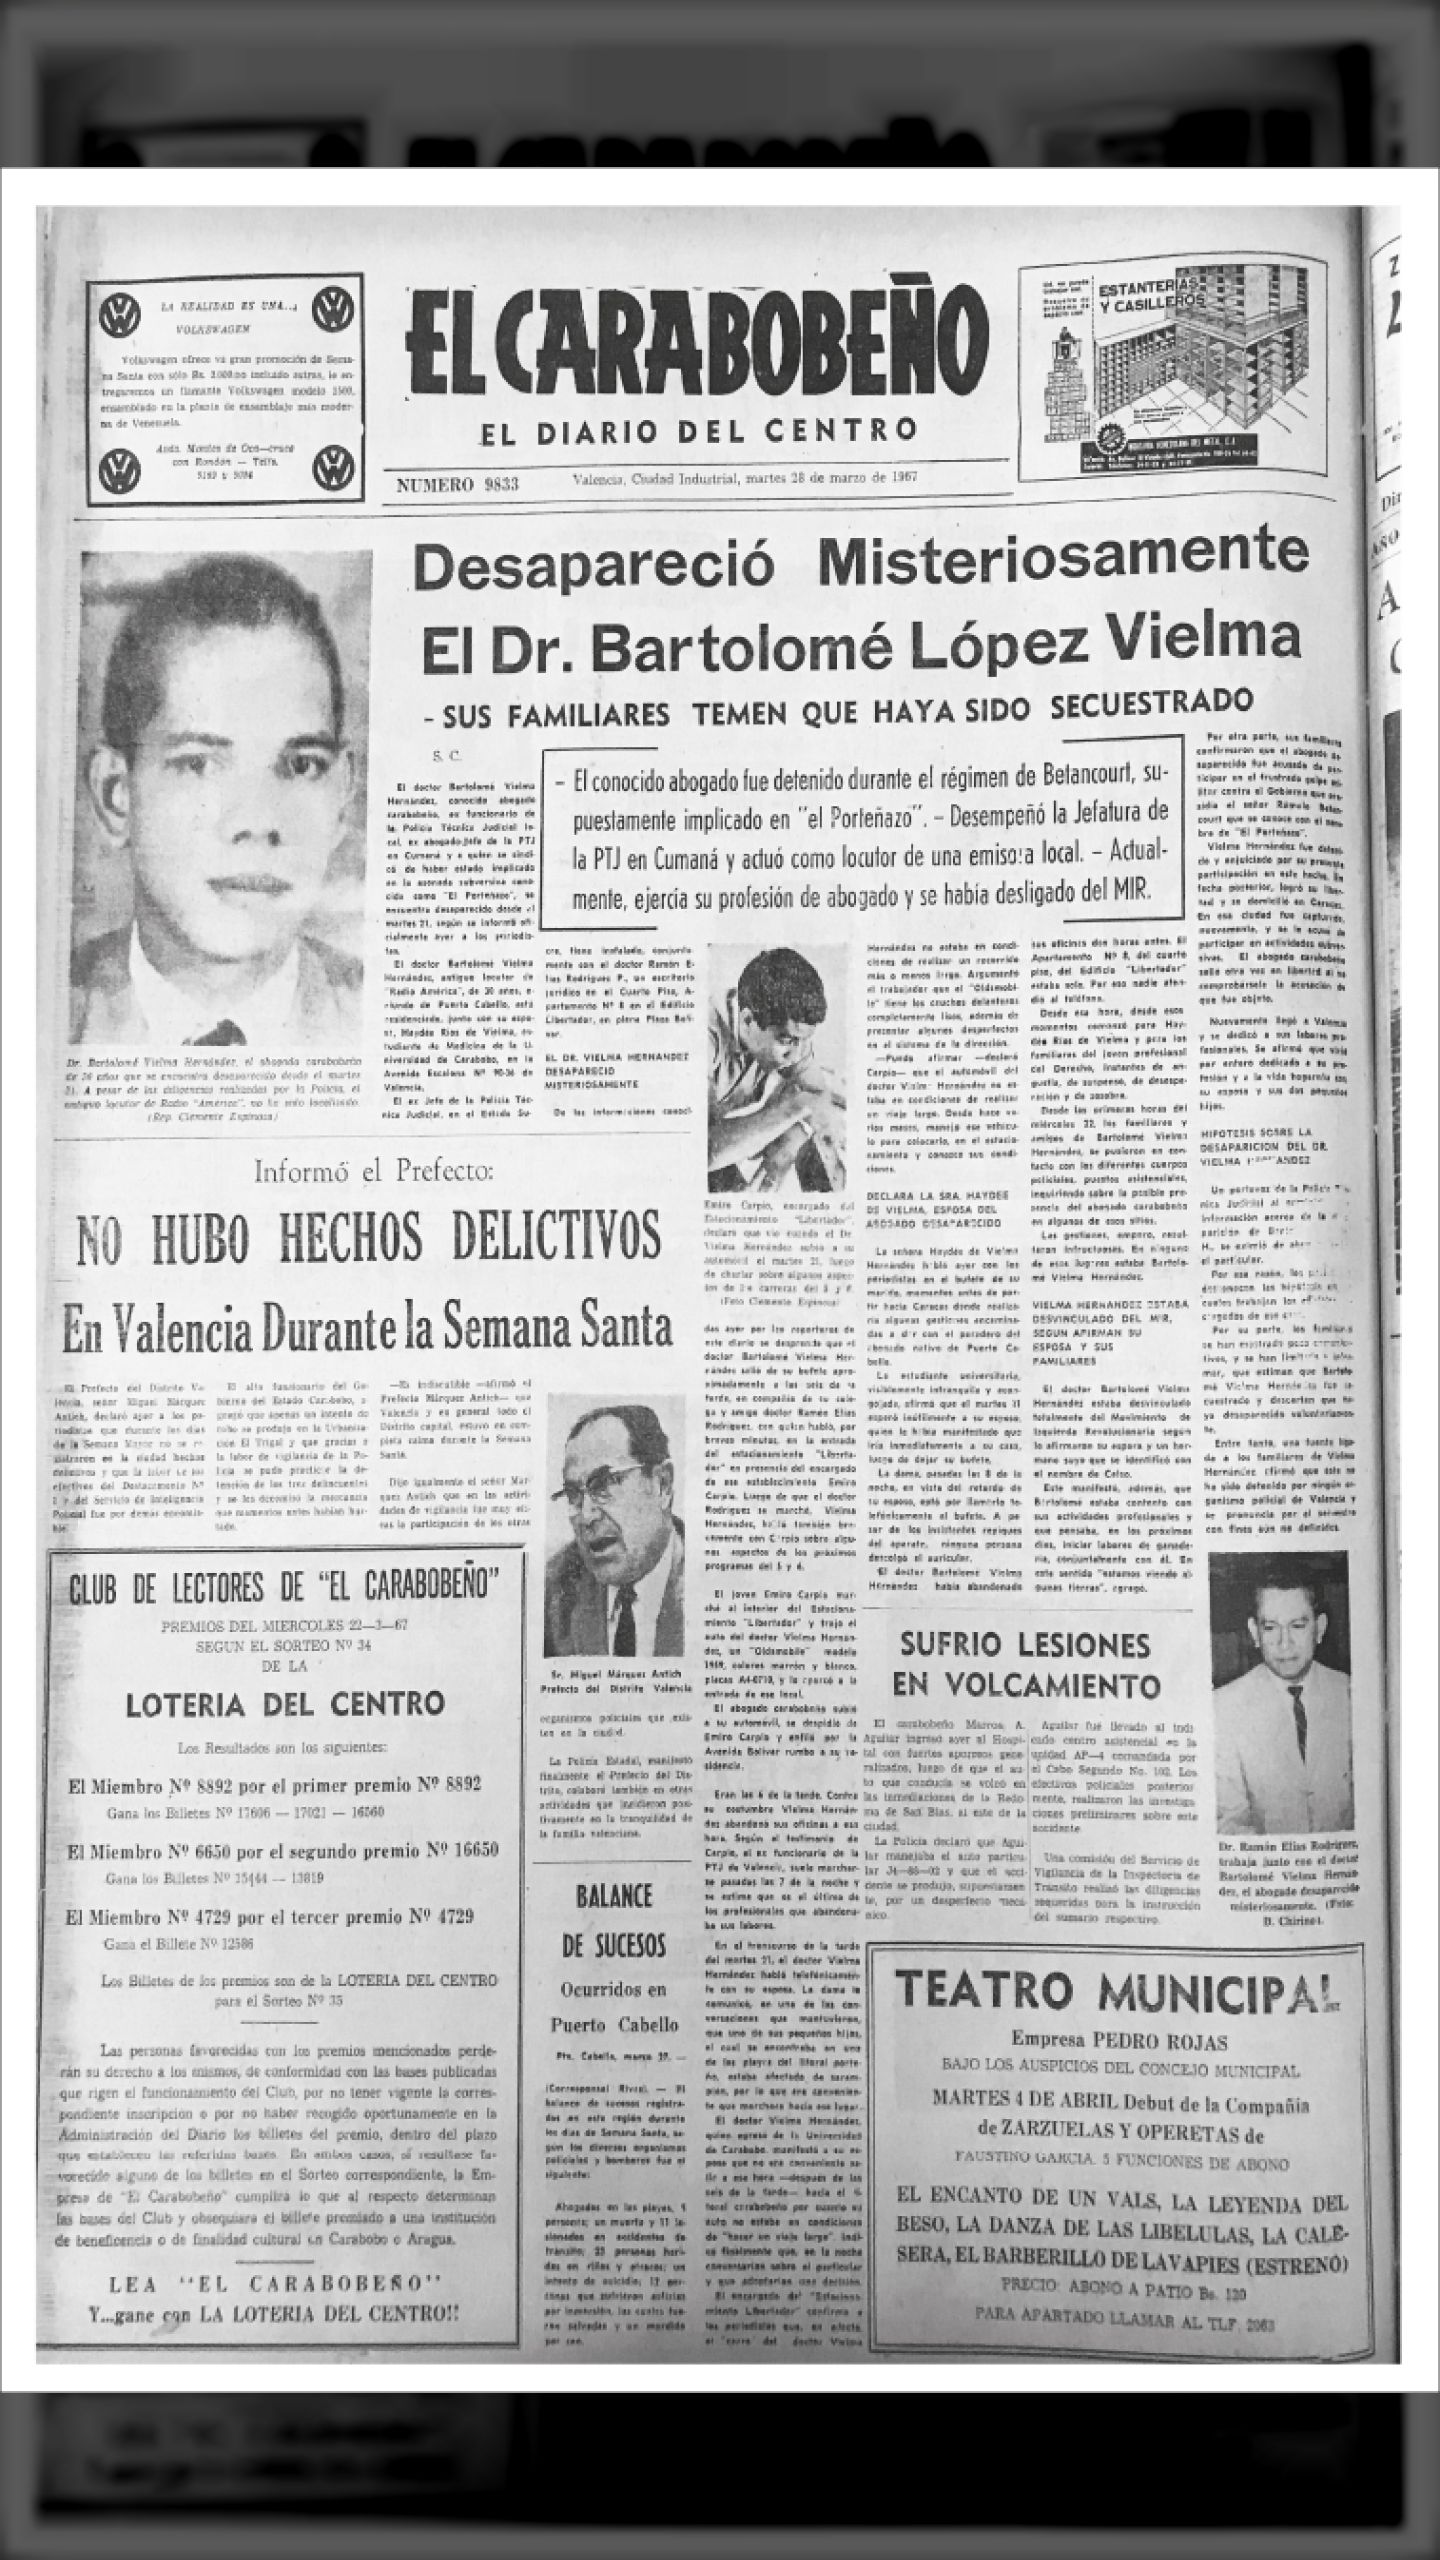 DESAPARECIDO EL DIRIGENTE DEL MIR BARTOLOMÉ VIELMA HERNÁNDEZ (El Carabobeño, 28 de marzo 1967)